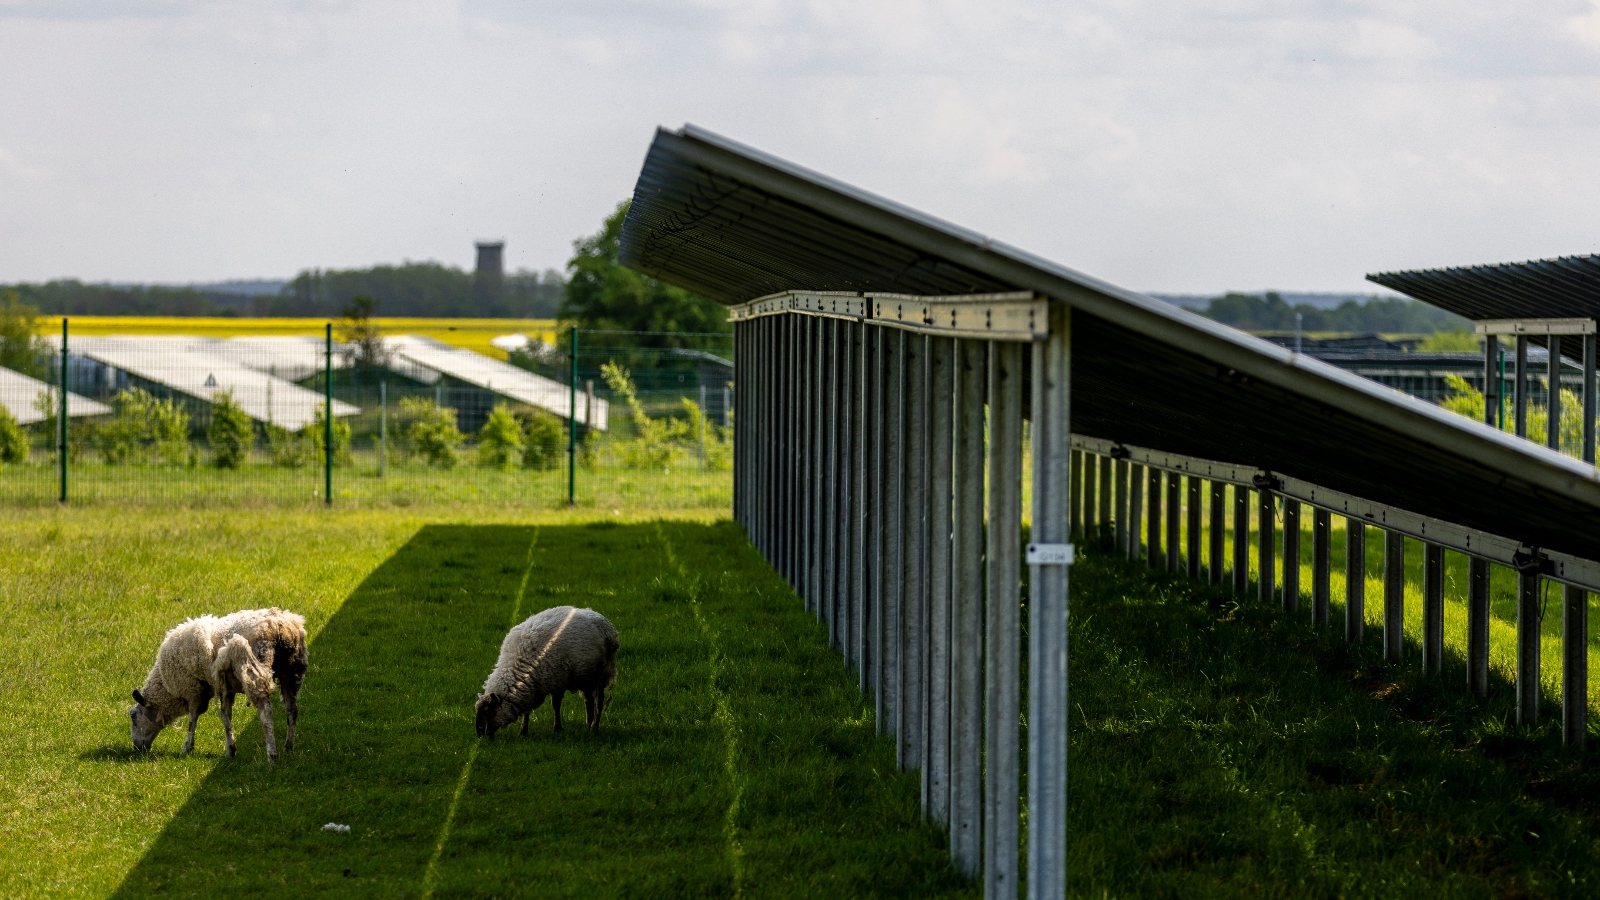 Sheep graze on grass under a series of solar panels.